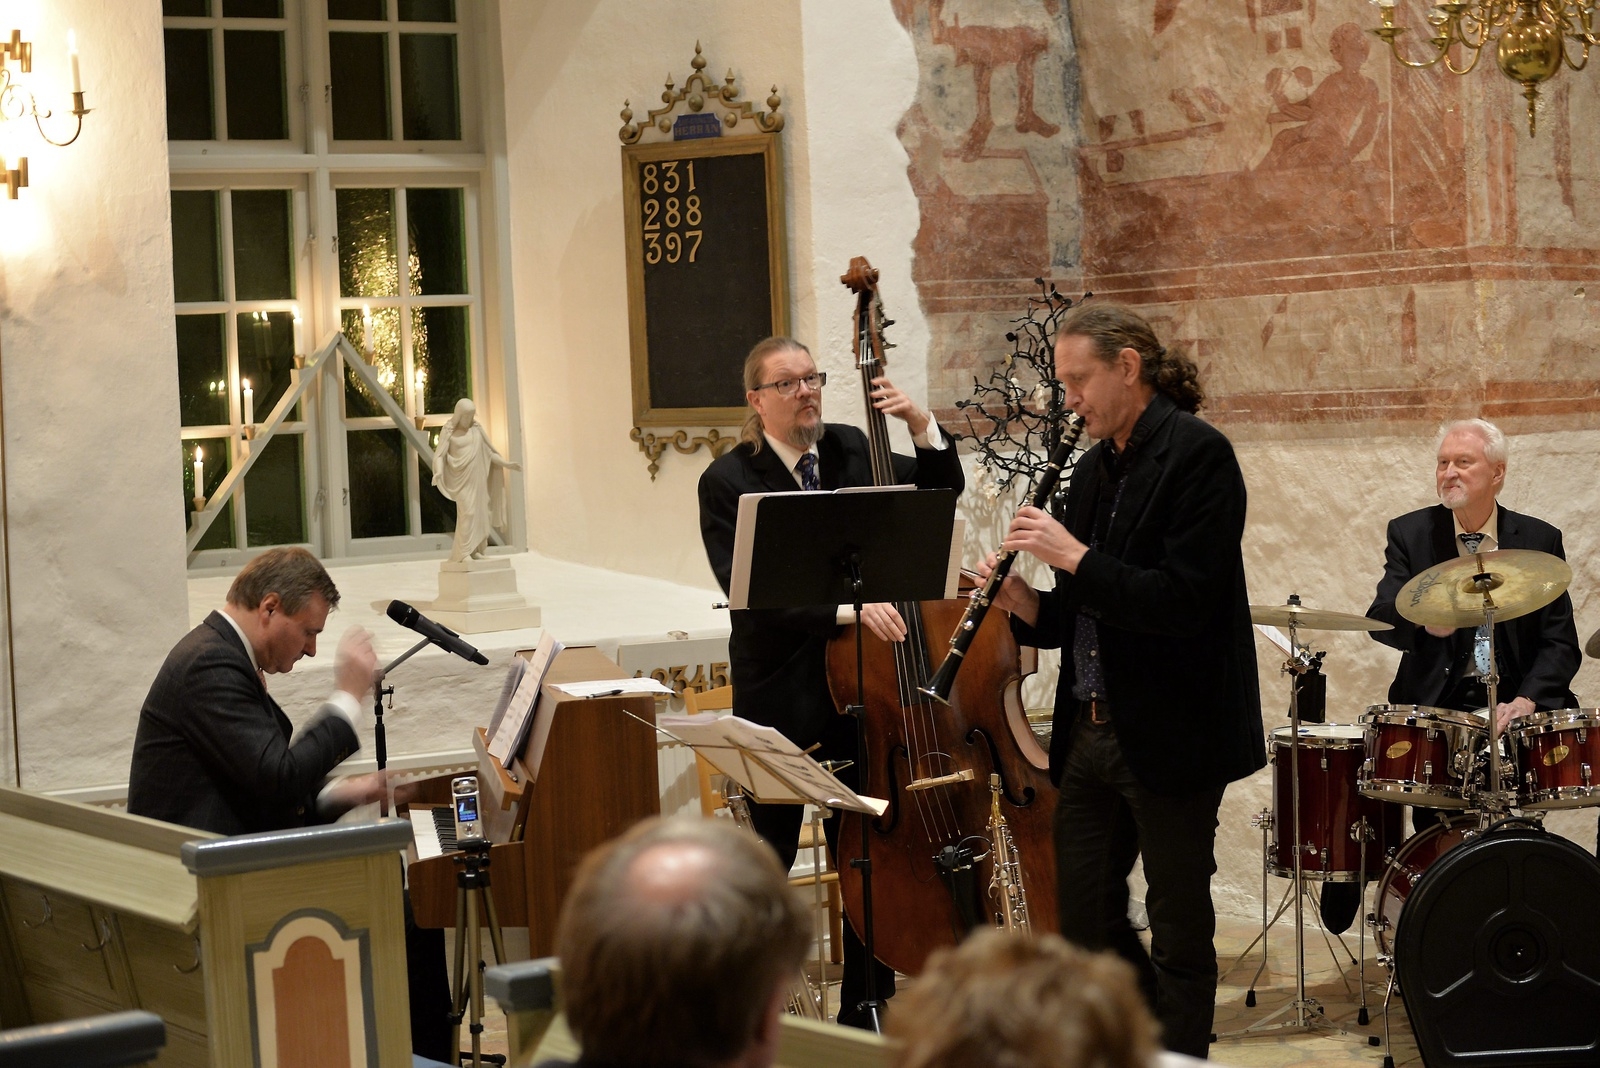 Glenn Bengtsson, Christer Schöld, Håkan Ekvall och Ulf Åkerberg jazzade i Finja kyrka. Foto: Johannes Höghäll Johnsson